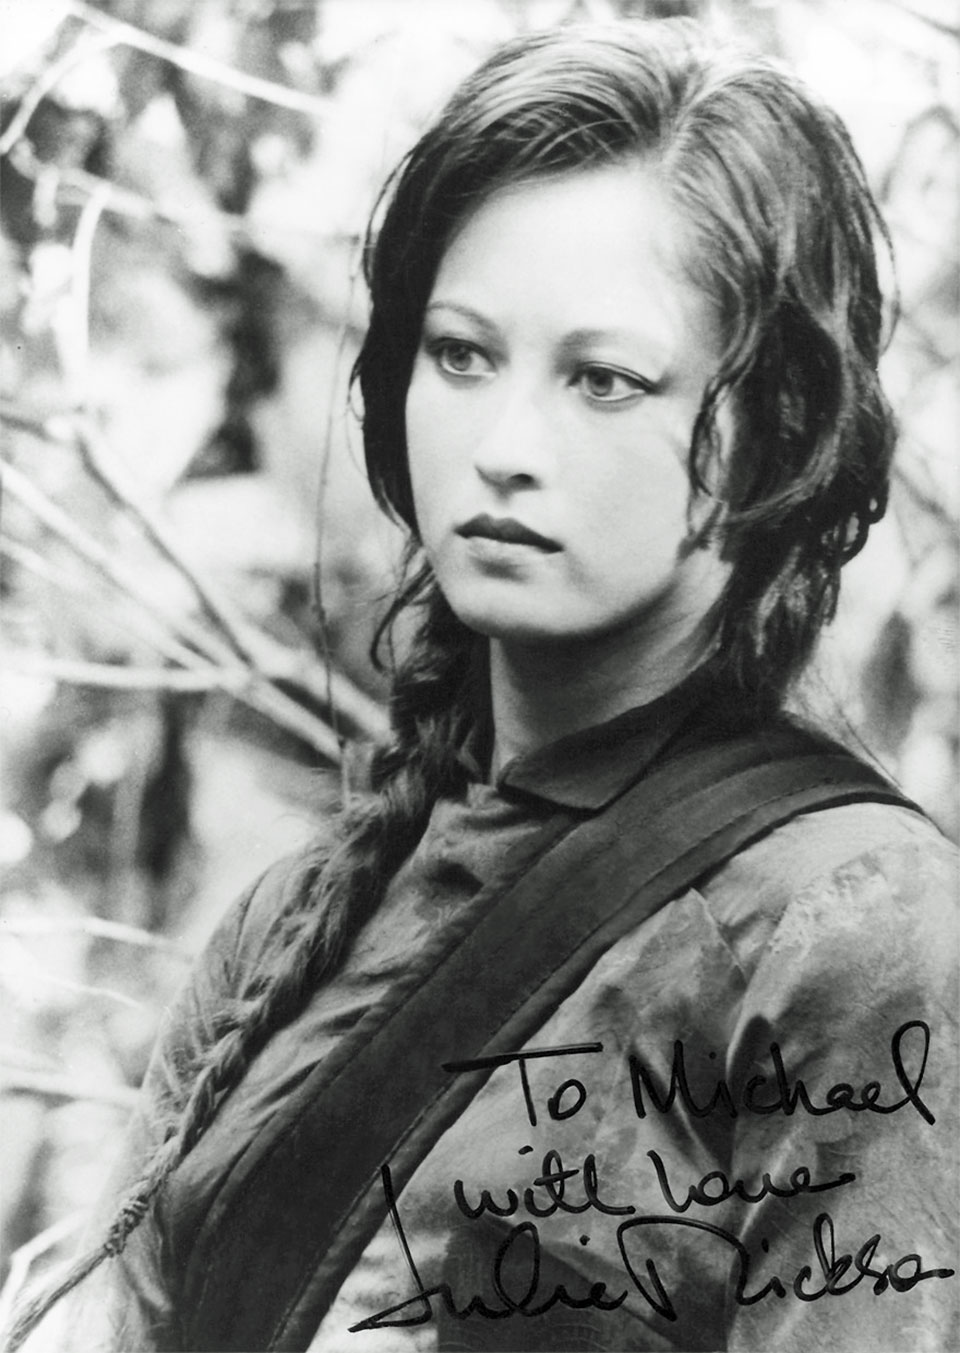 Danksagung von Schauspielerin Julia Nickson-Soul mit der Widmung "To Michael with love“ auf ihrer Autogrammkarte mit einem Szenen-Foto von ihr aus dem Actionfilm "Rambo II - Der Auftrag"